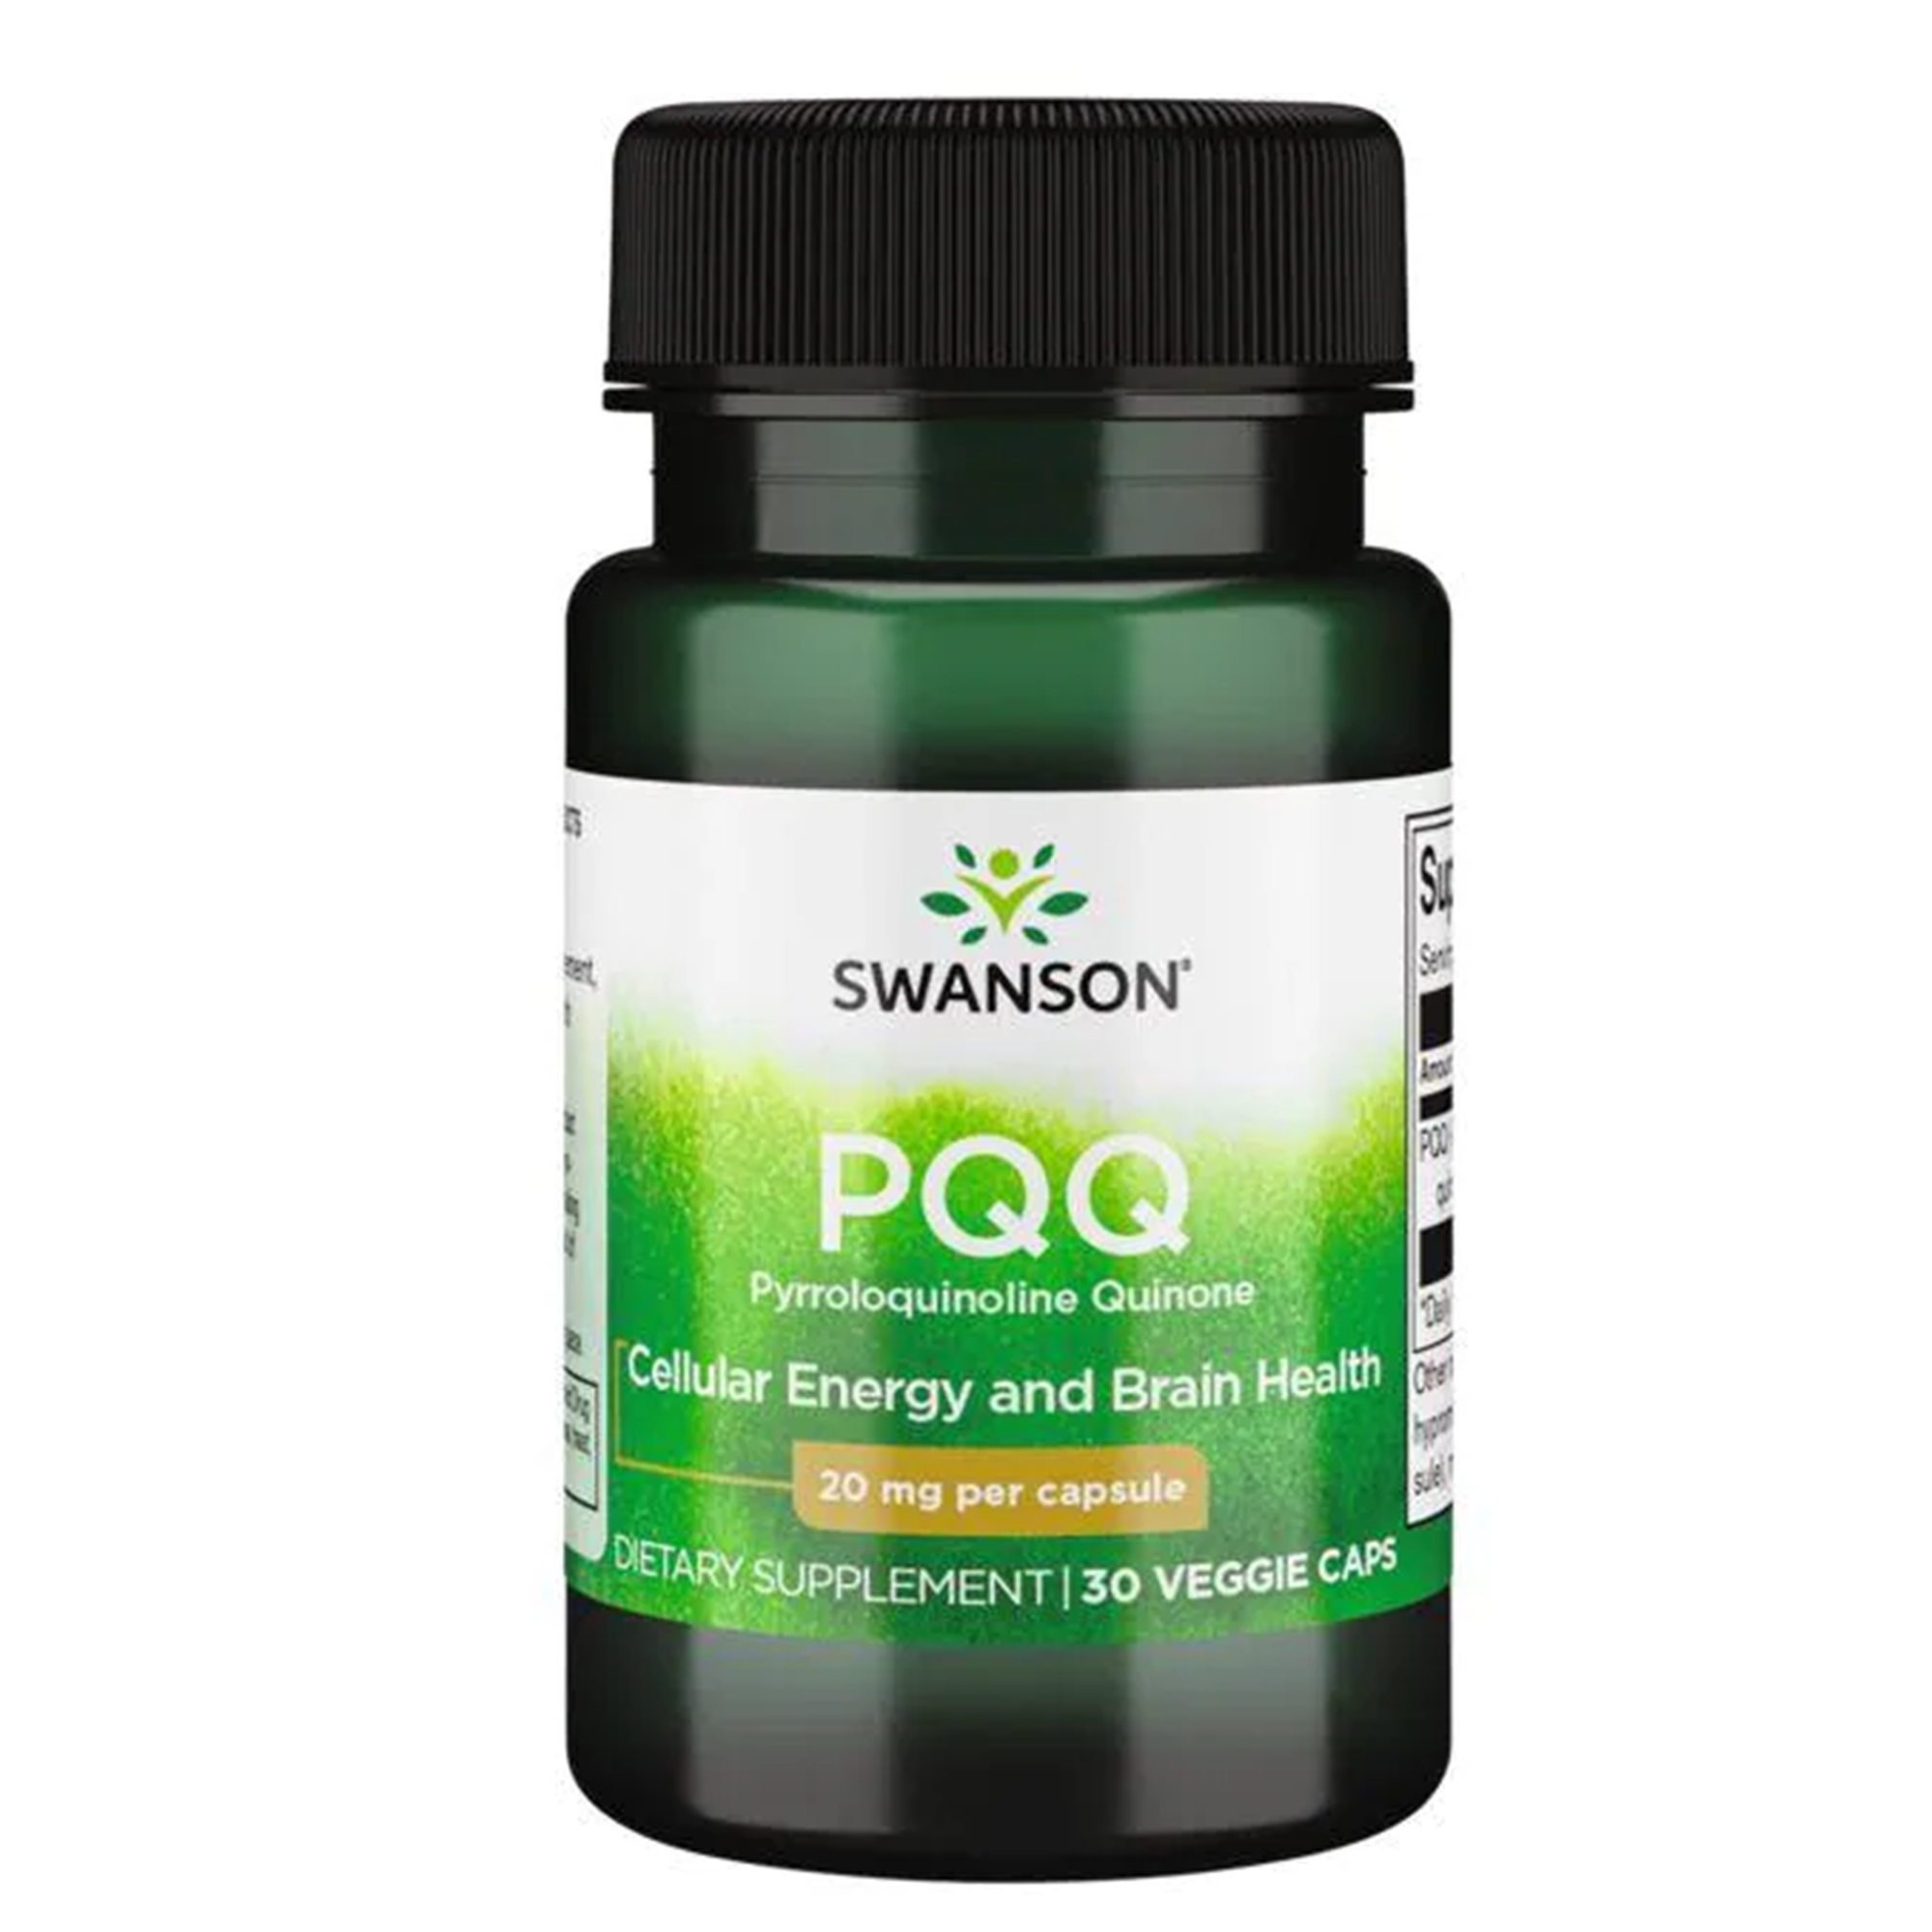 Swanson PQQ Pyrroloquinoline Quinone, 30 Veggie Capsules, 20 mg